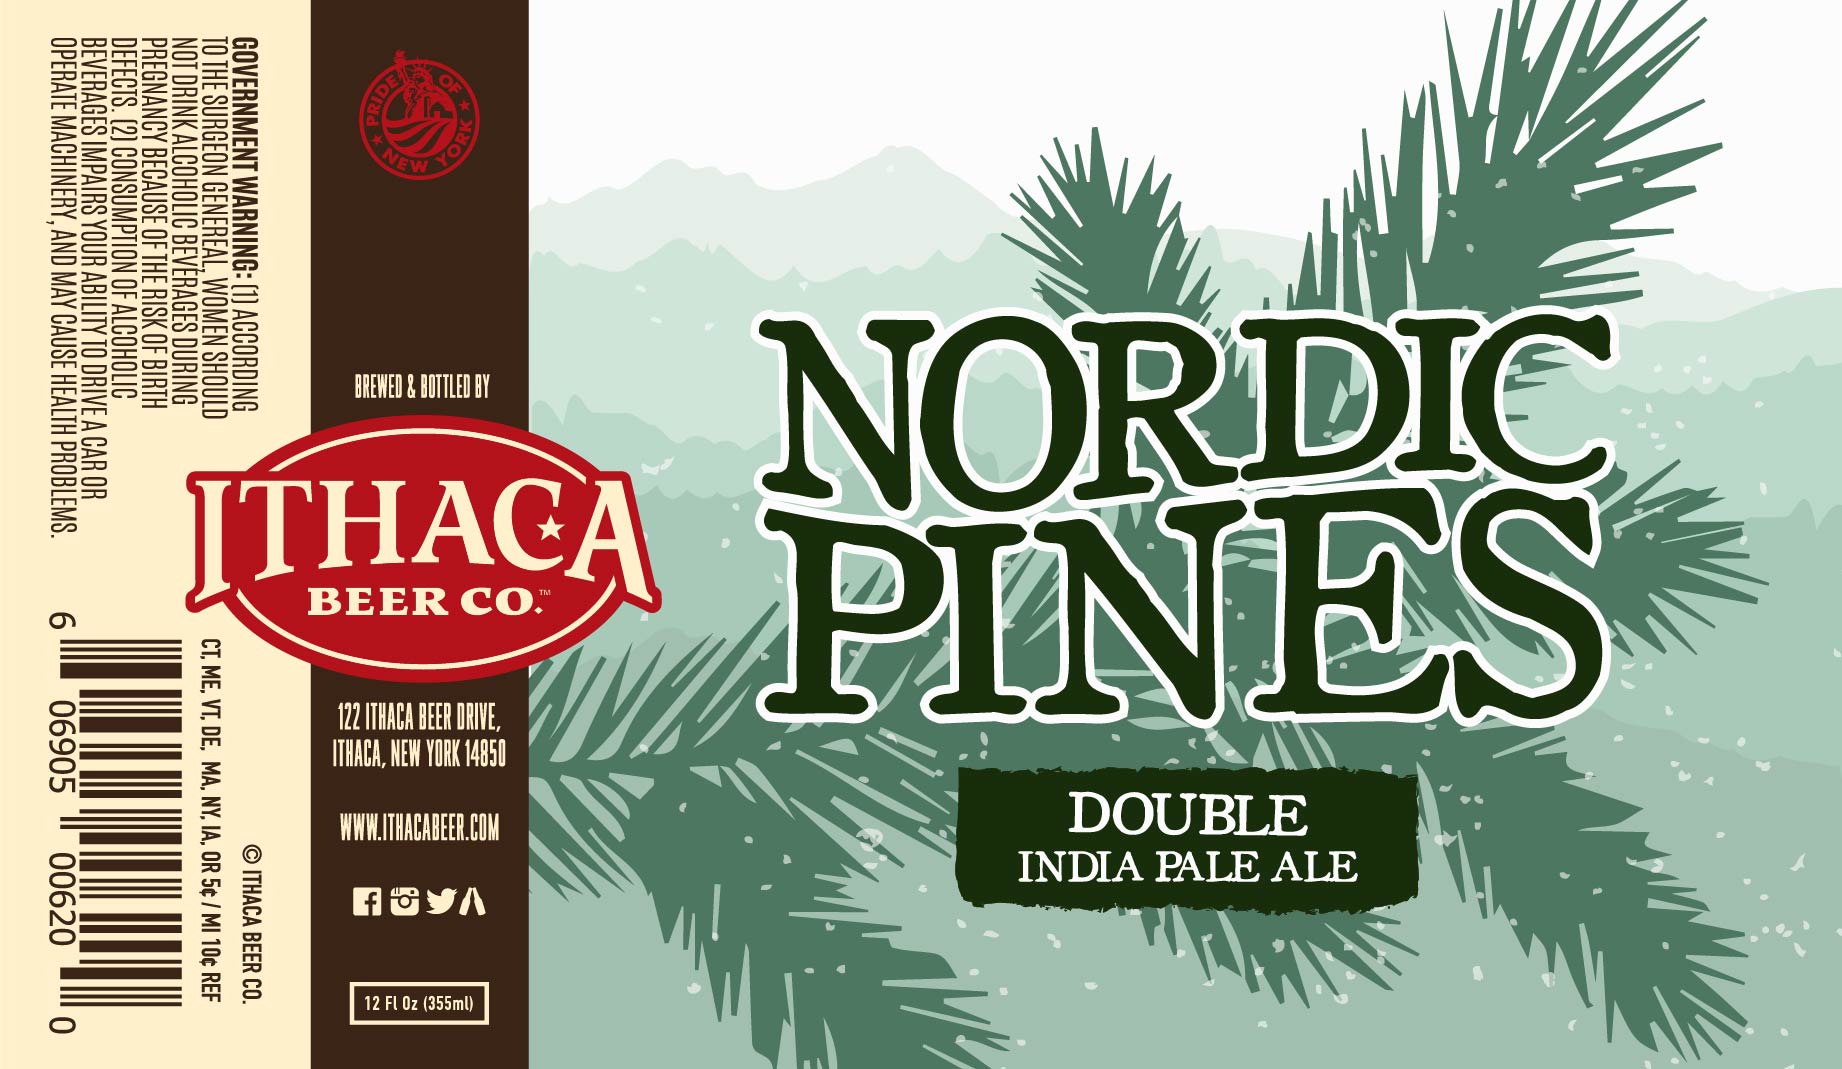 Ithaca Nordic Pines